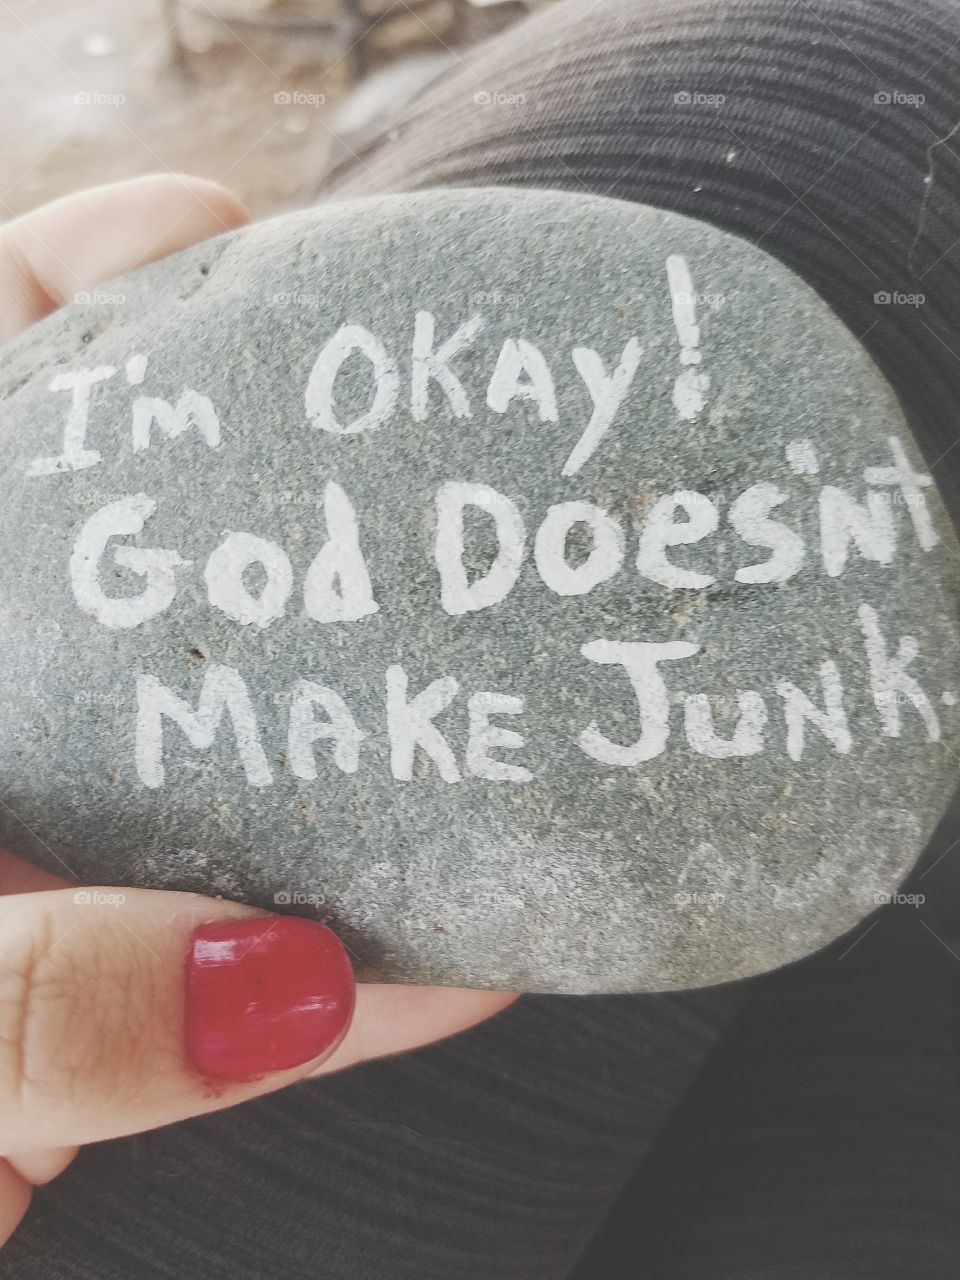 "God doesn't make junk"